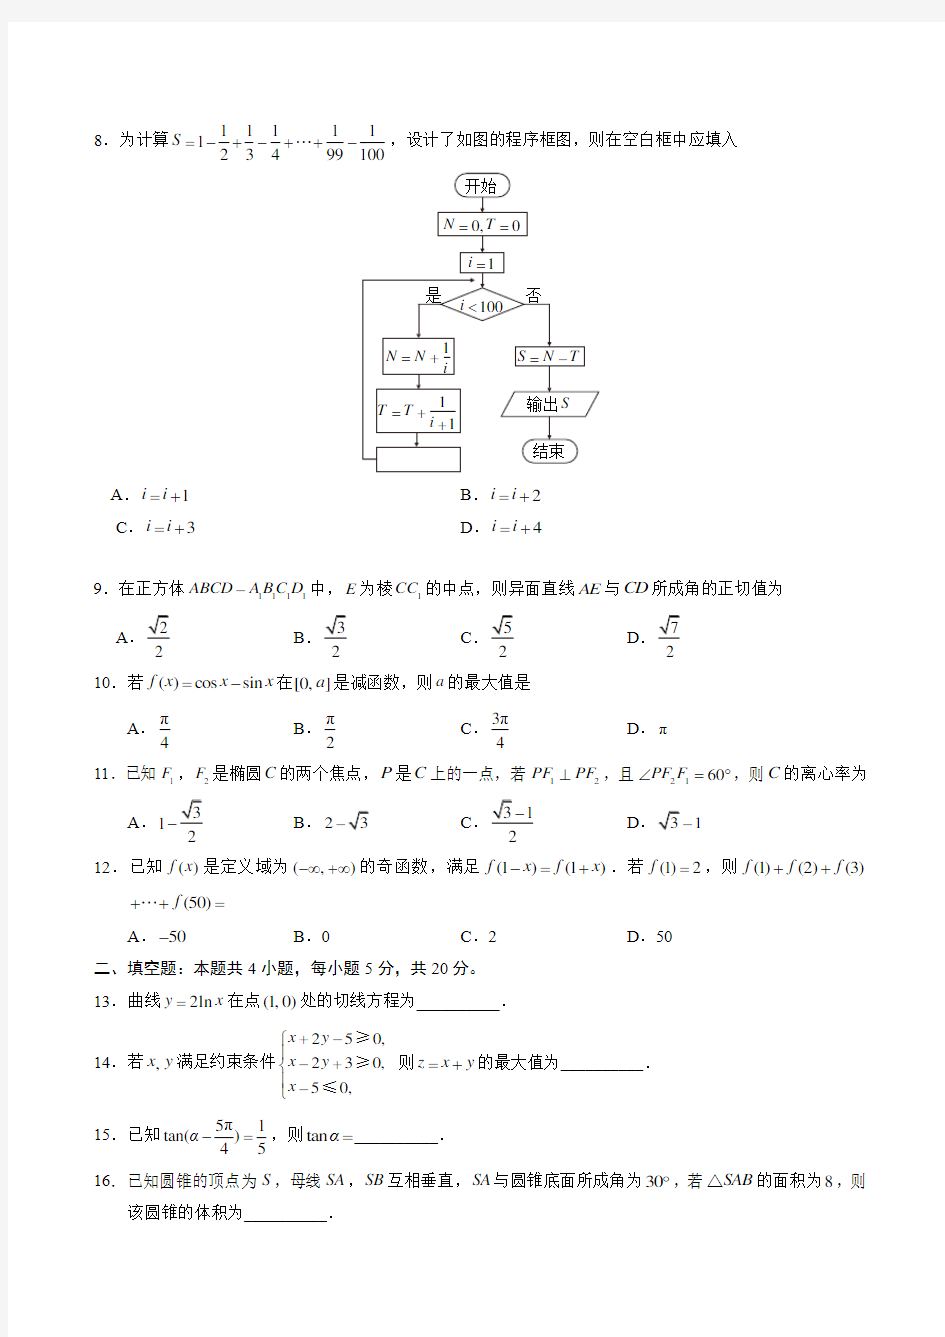 2018年陕西数学文科高考试题及答案